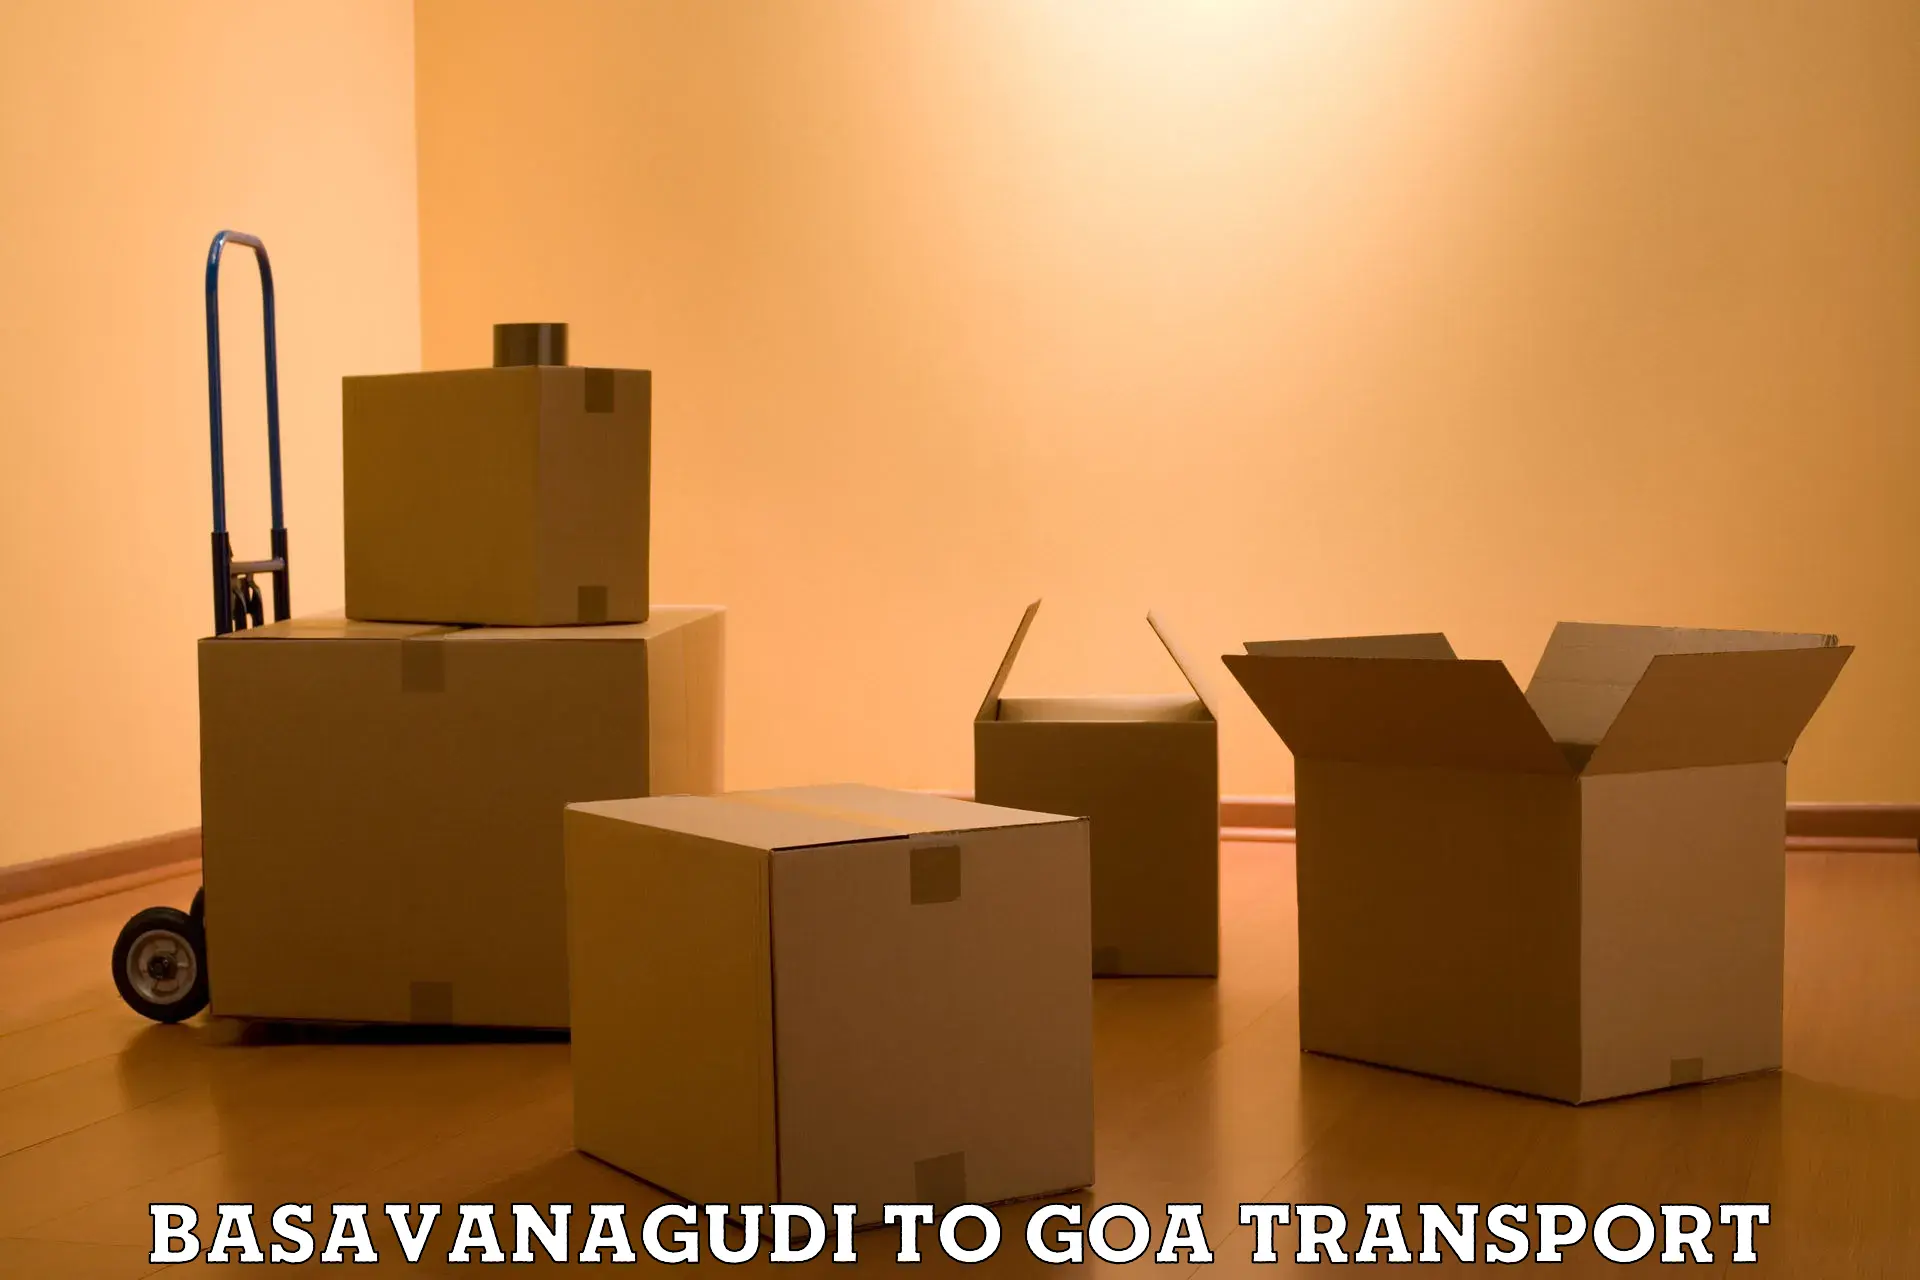 Daily parcel service transport Basavanagudi to Panaji